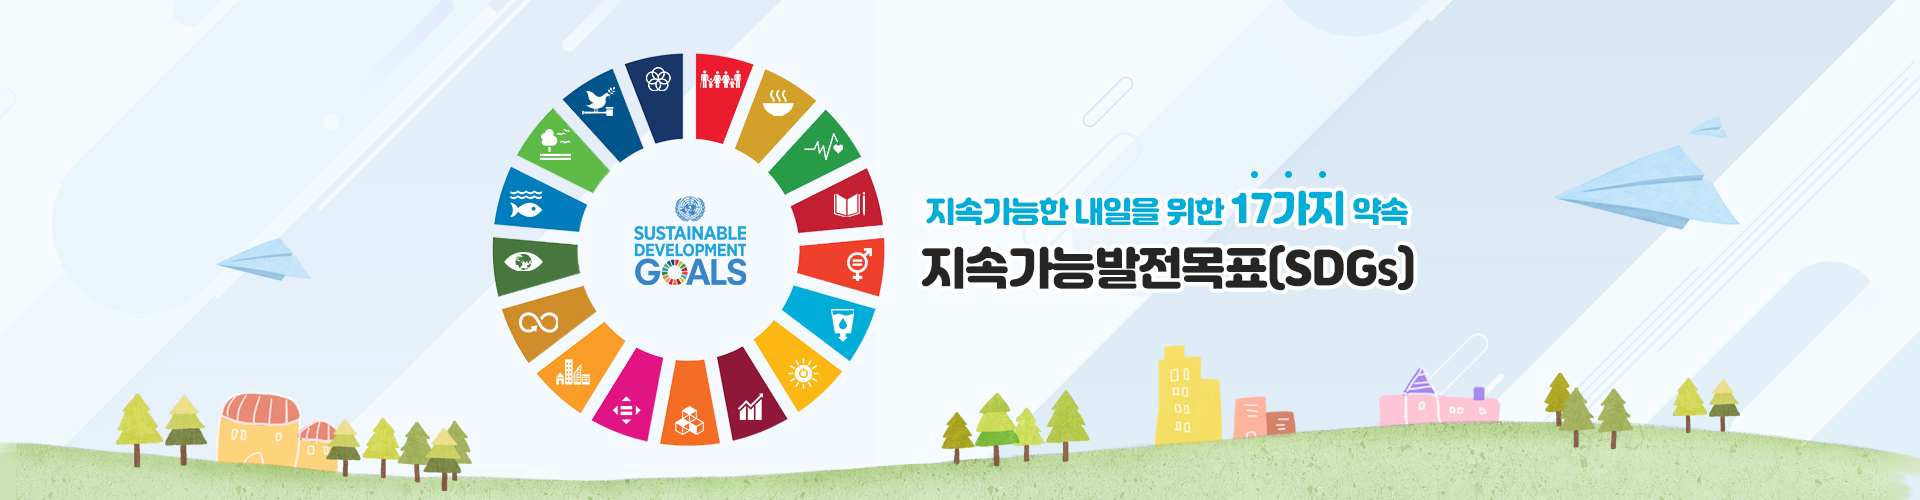 지속가능발전목표(SDGs)